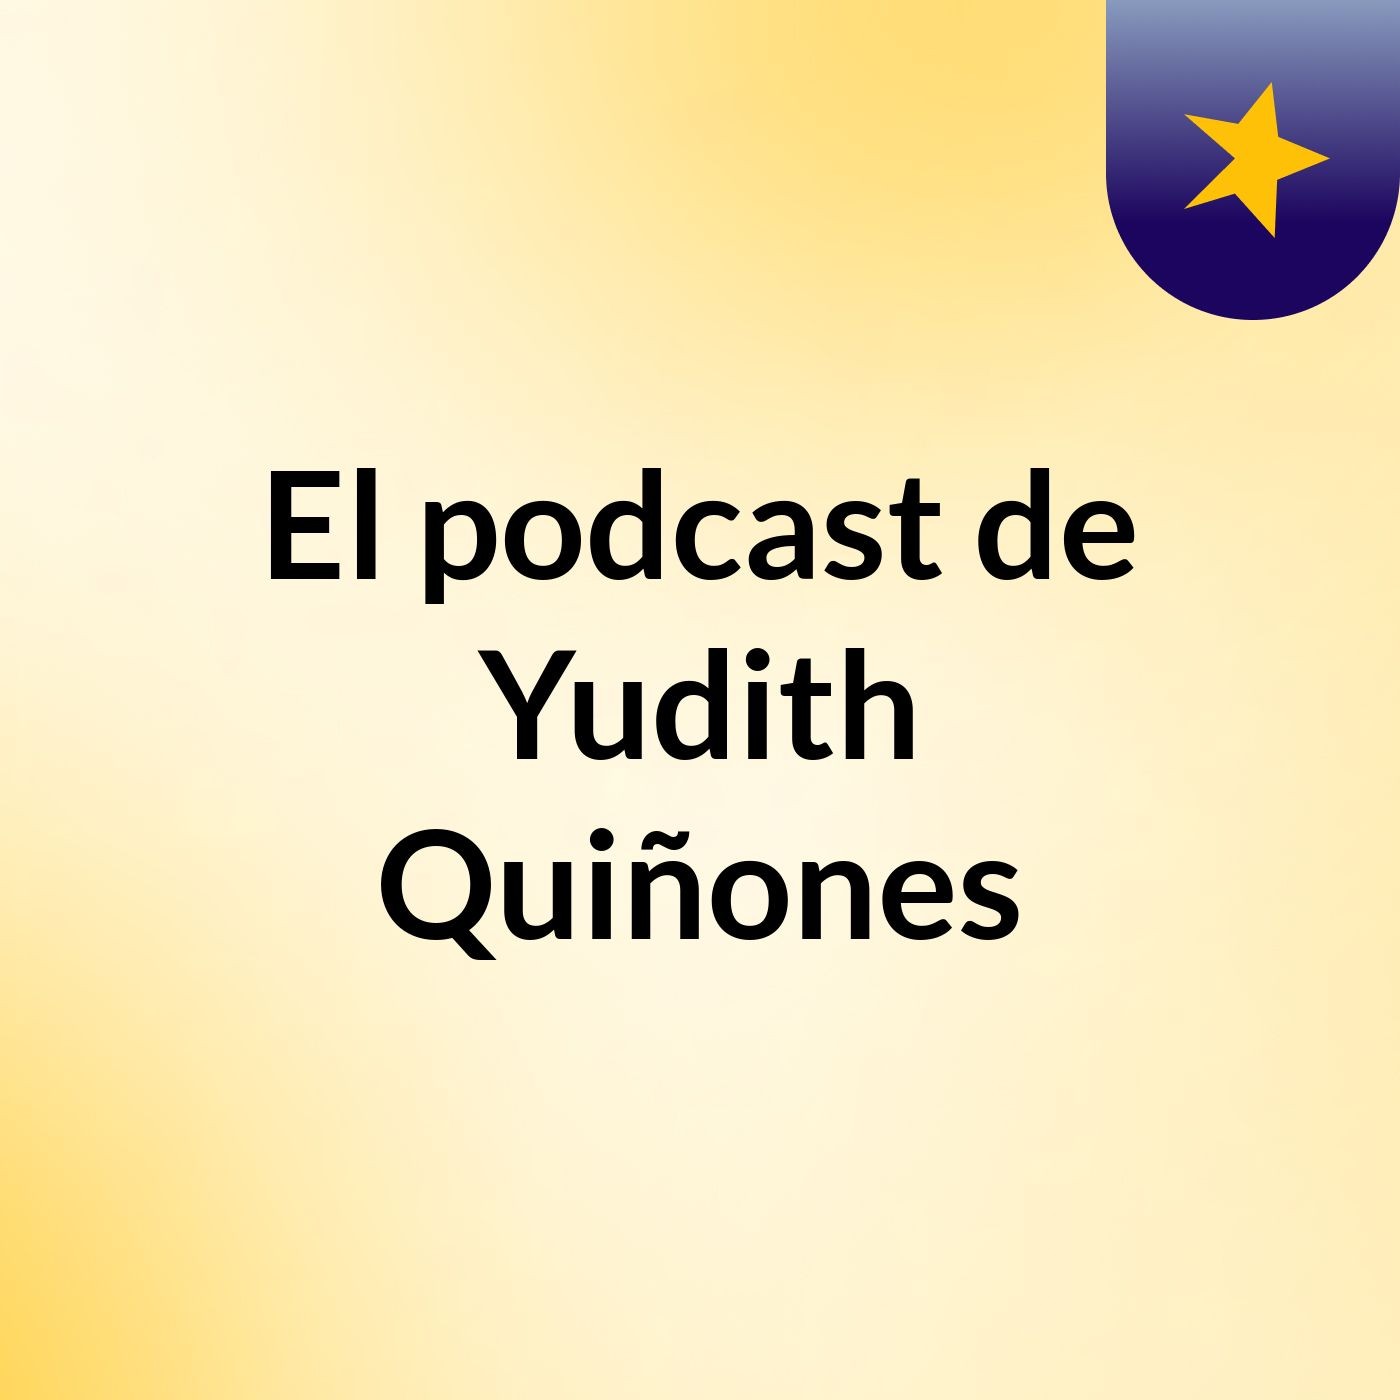 Episodio 3 - El podcast de Yudith Quiñones